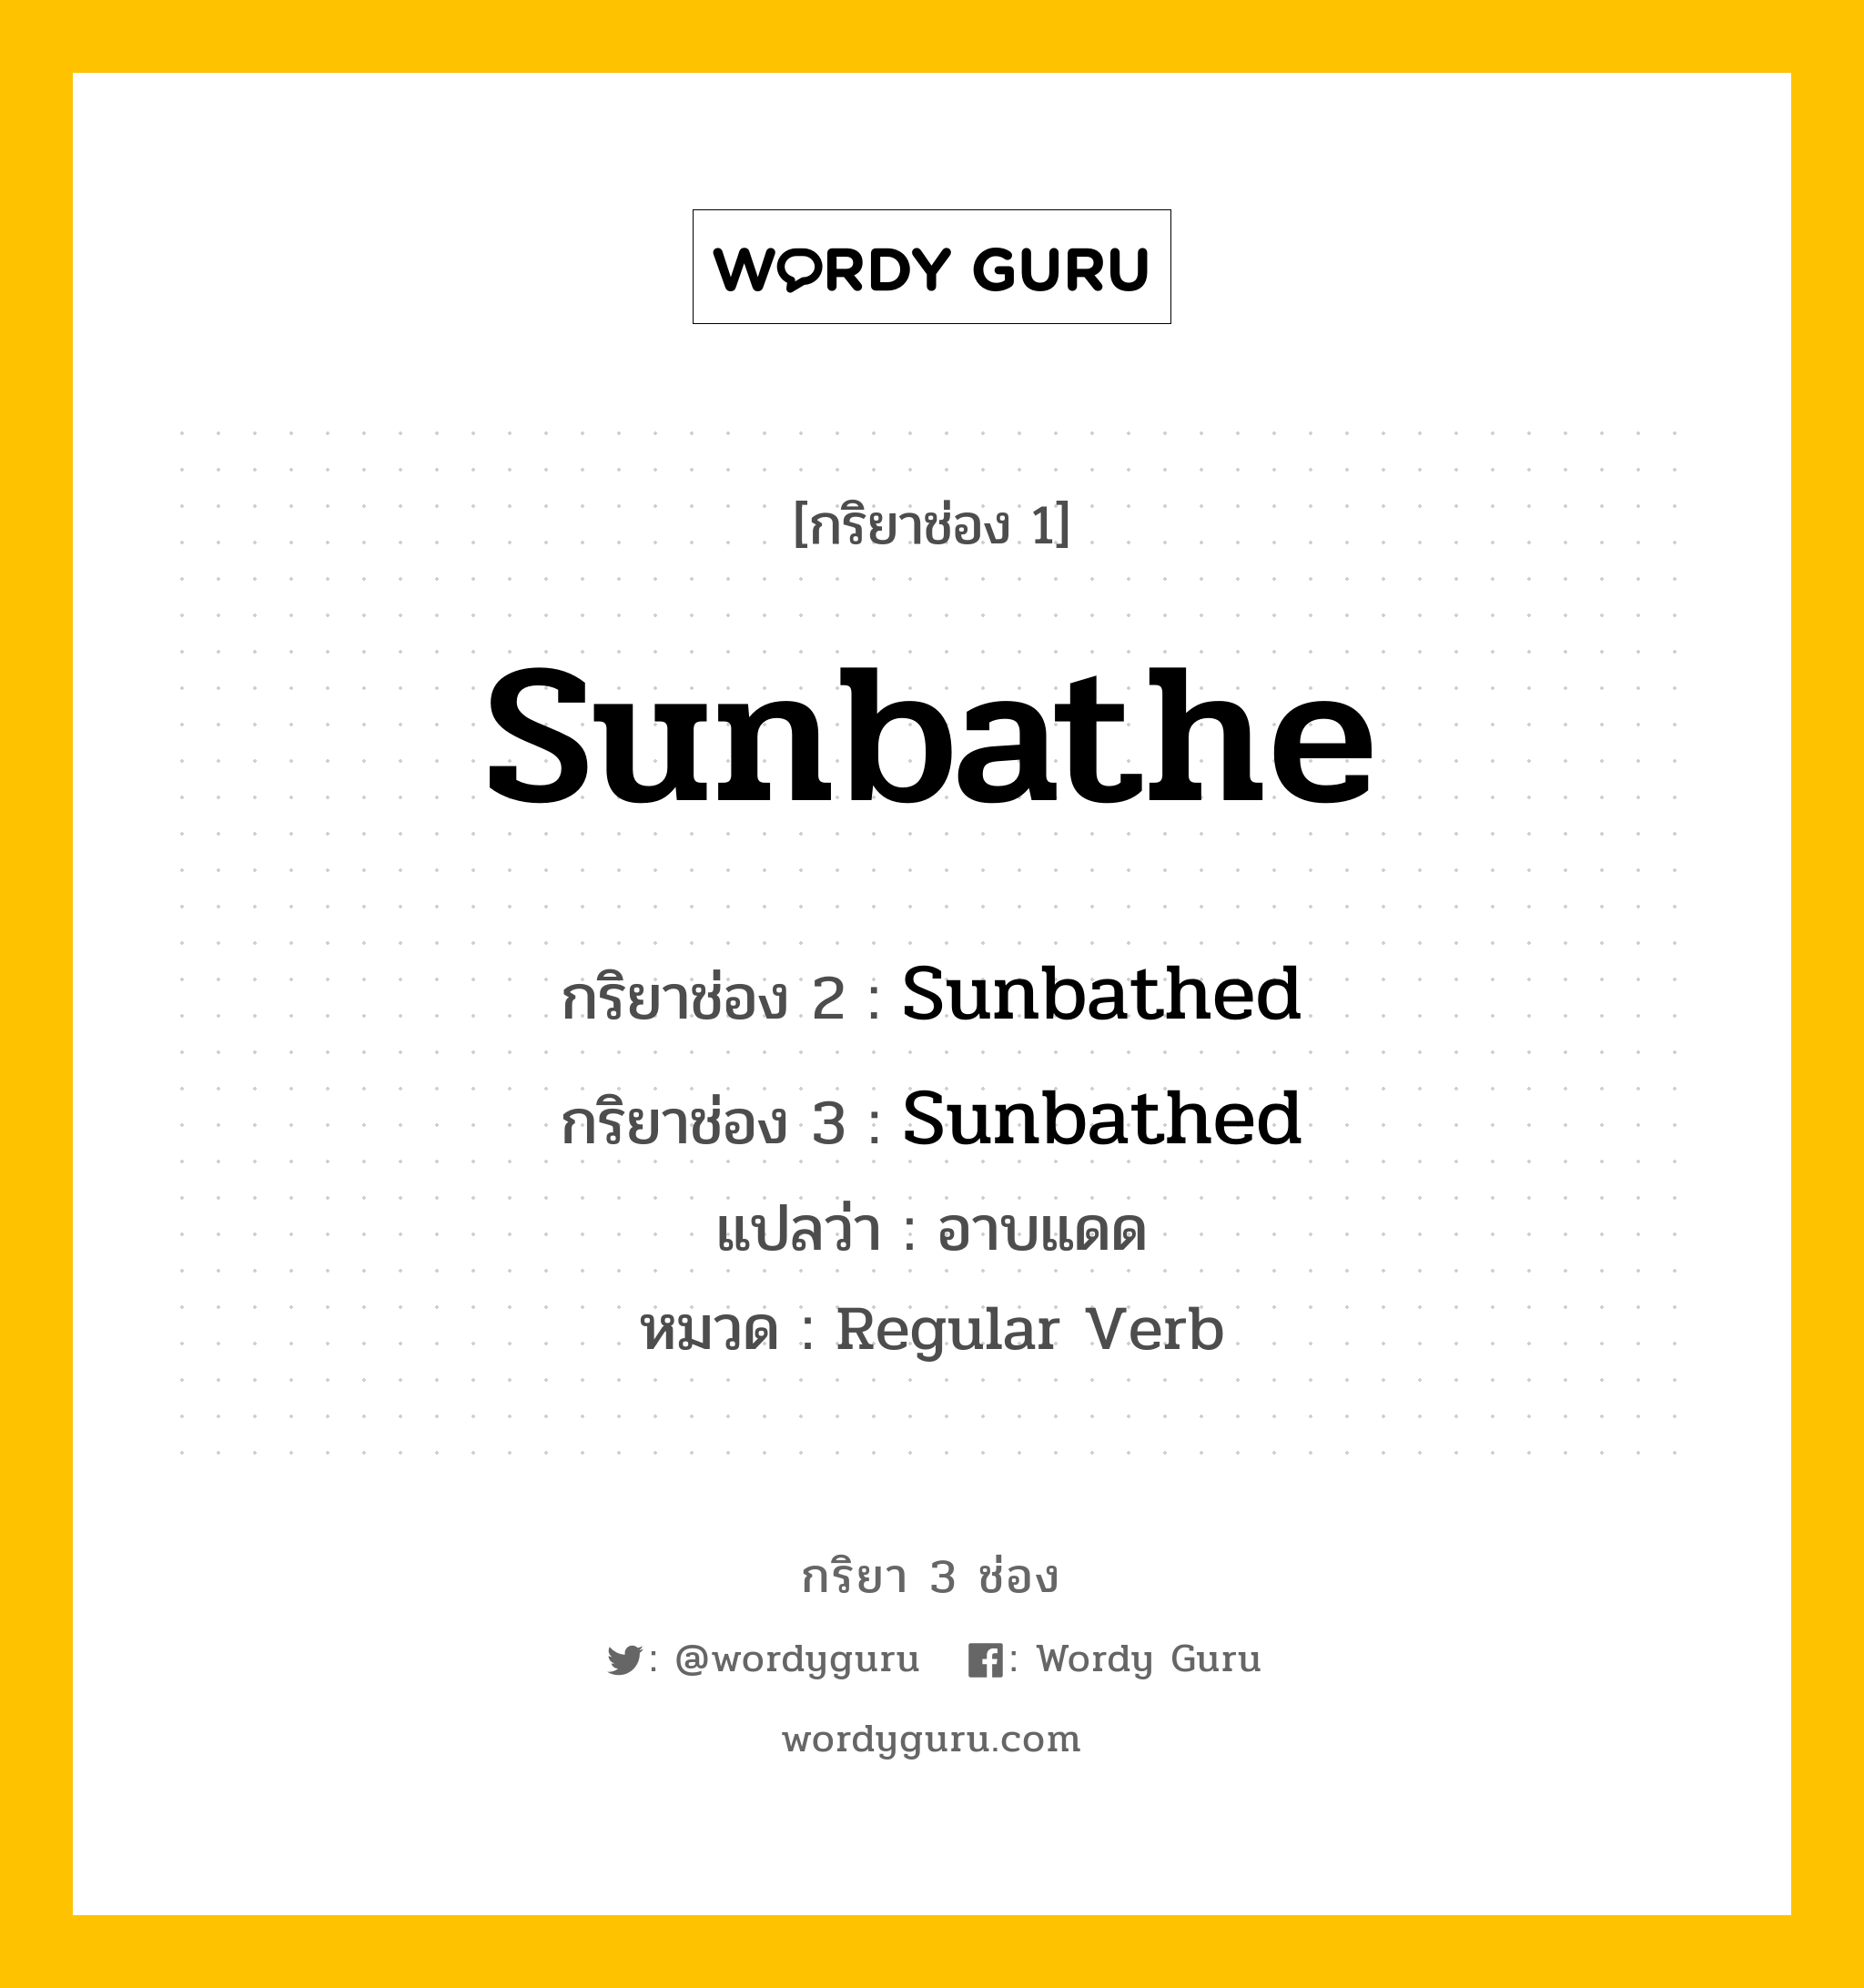 กริยา 3 ช่อง ของ Sunbathe คืออะไร? มาดูคำอ่าน คำแปลกันเลย, กริยาช่อง 1 Sunbathe กริยาช่อง 2 Sunbathed กริยาช่อง 3 Sunbathed แปลว่า อาบแดด หมวด Regular Verb หมวด Regular Verb